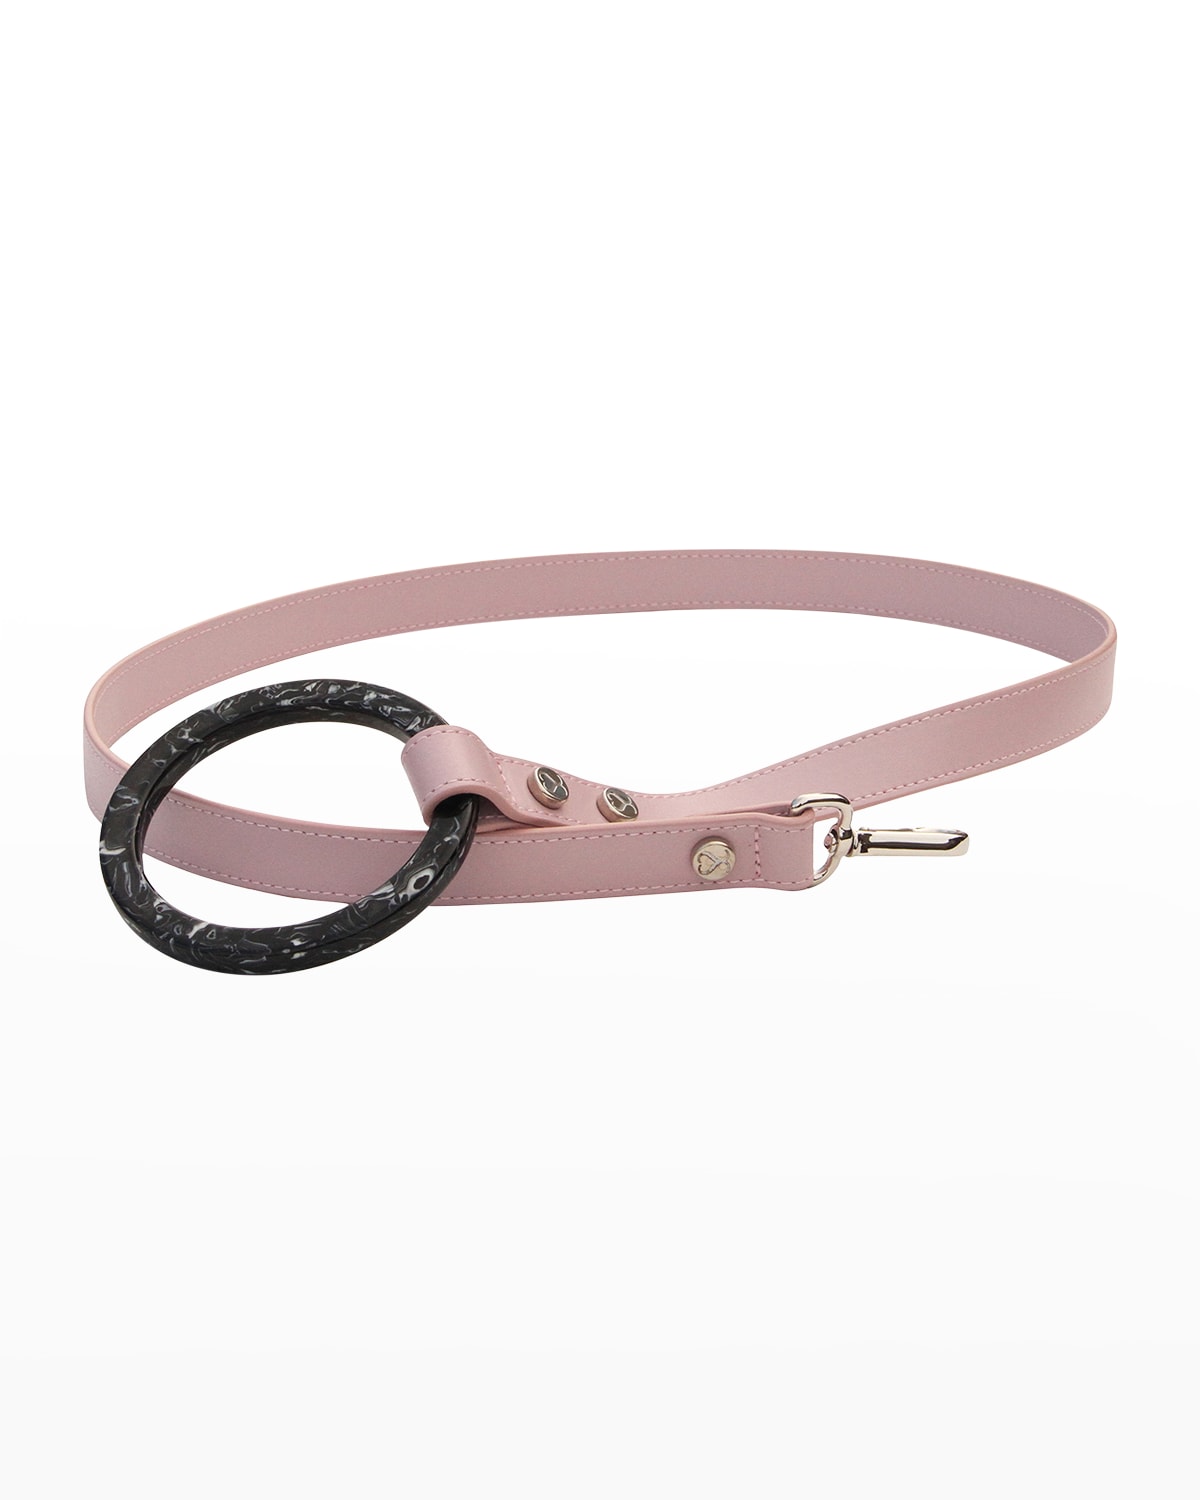 Shop Shaya Pets Susan Dog Leash In Blush Pink